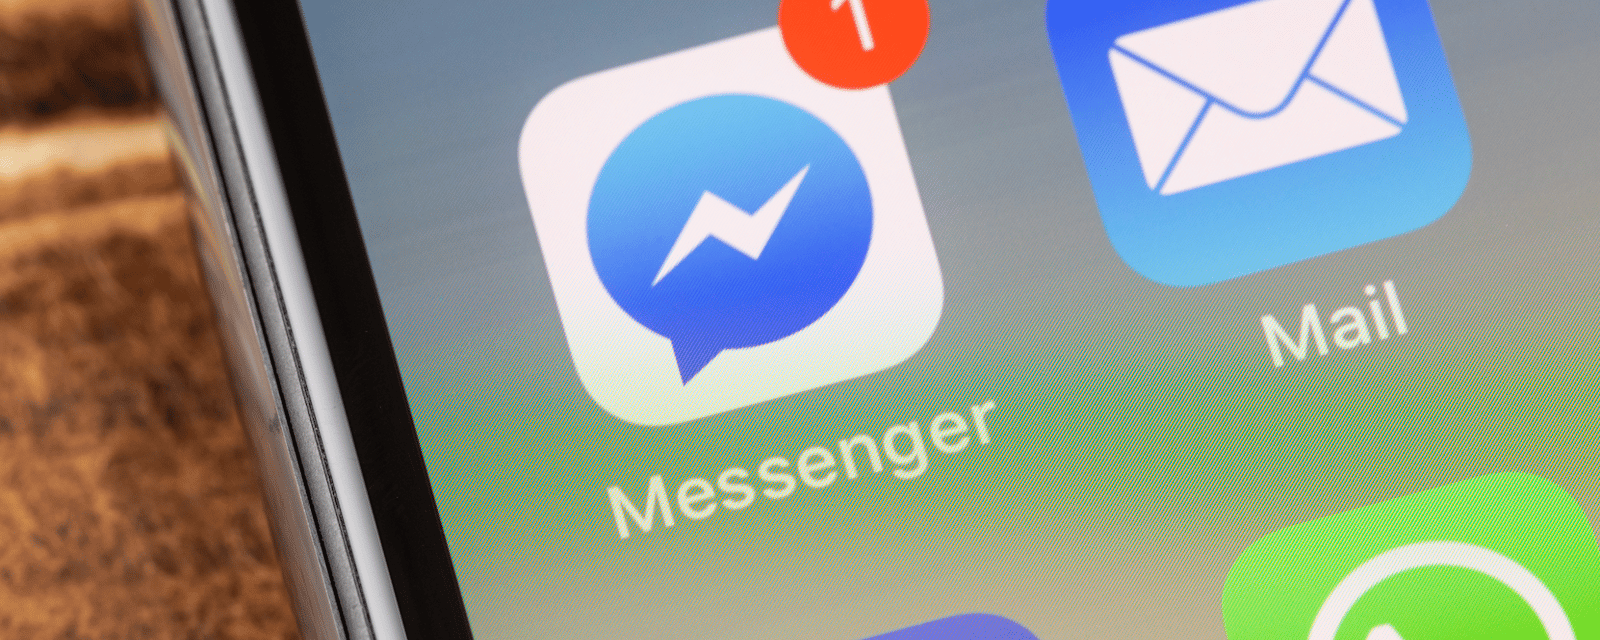 Facebook va mettre fin à une populaire fonction de Messenger 